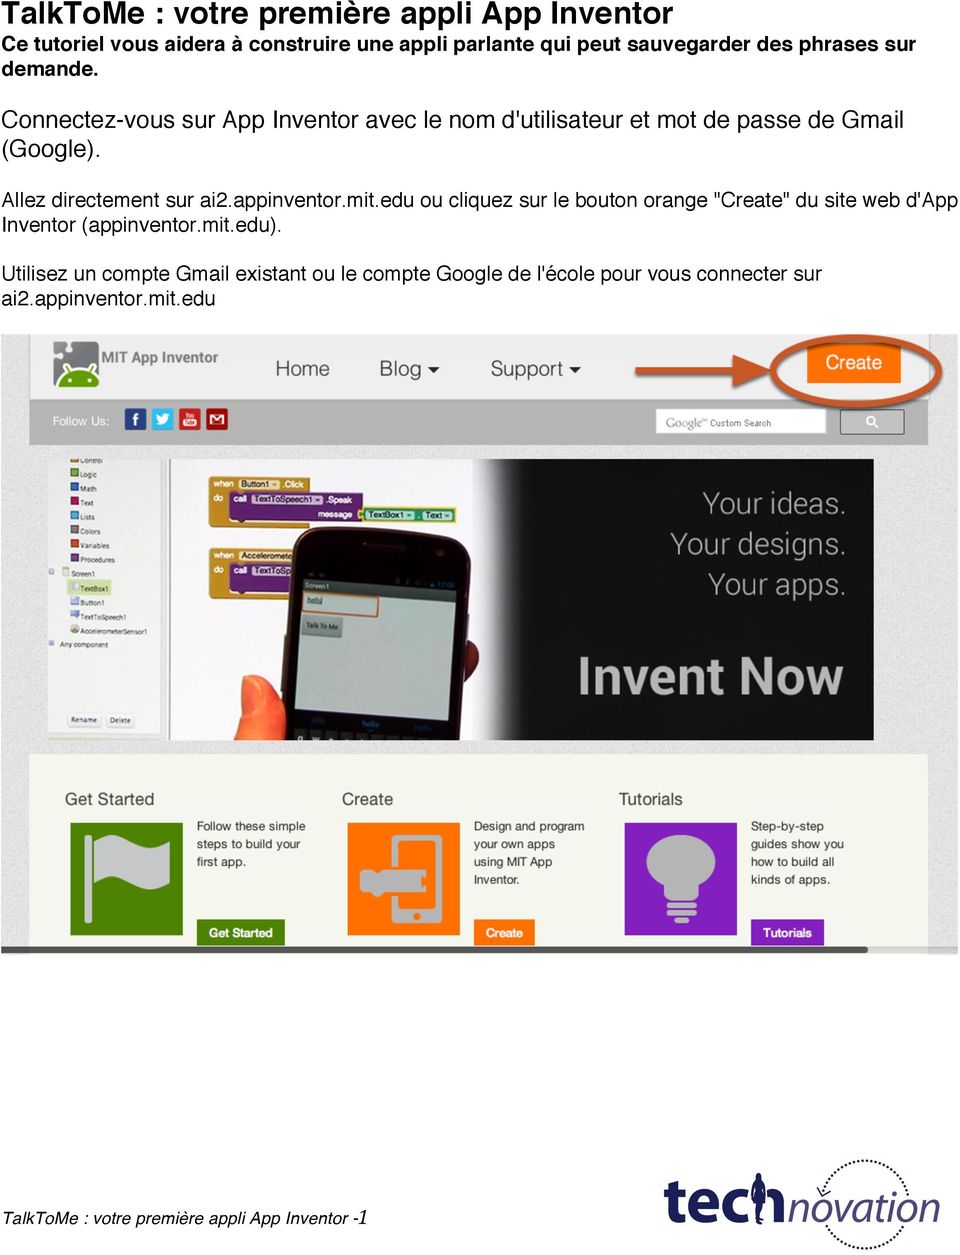 appinventor.mit.edu ou cliquez sur le bouton orange "Create" du site web d'app Inventor (appinventor.mit.edu).